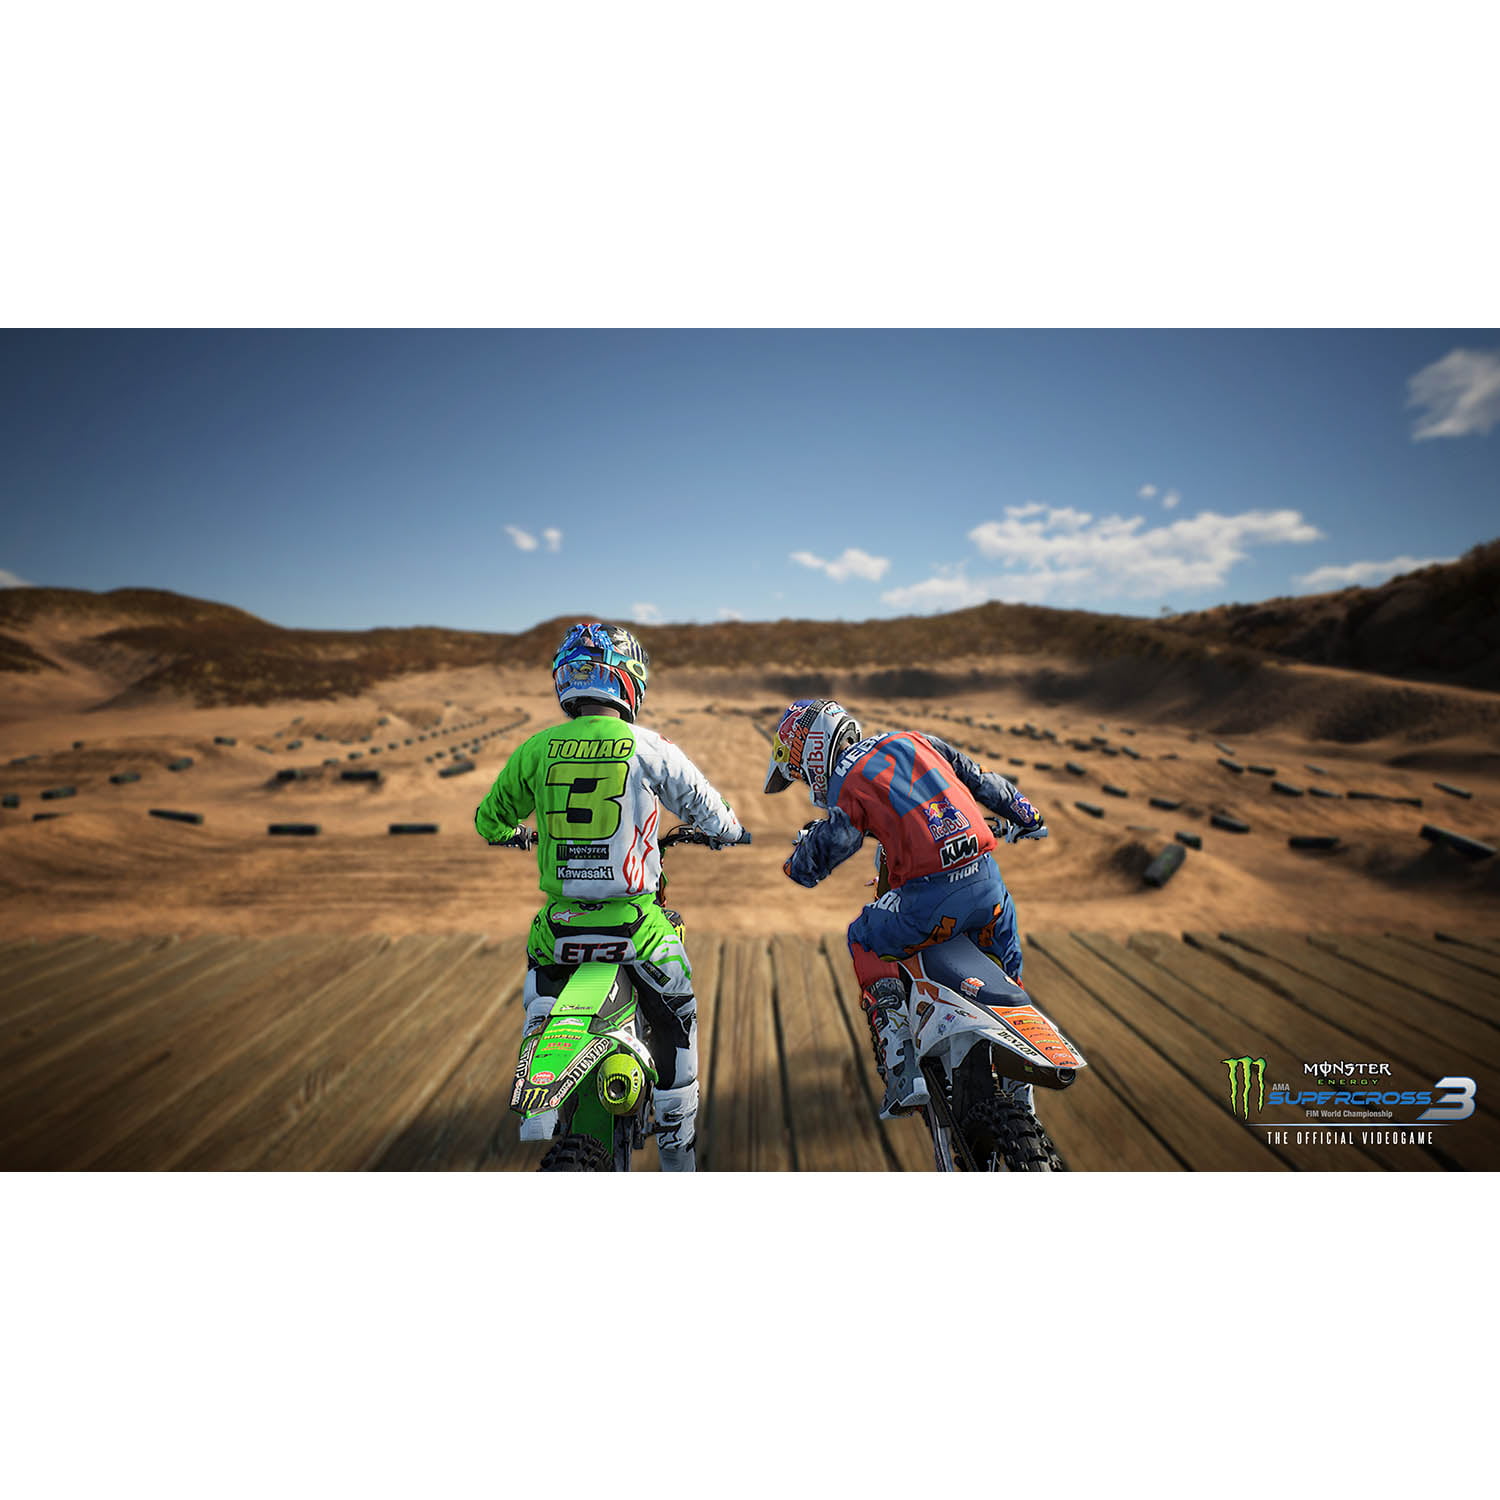 NOVO JOGO de MOTOCROSS REALISTA!!! - Monster Energy Supercross 3 